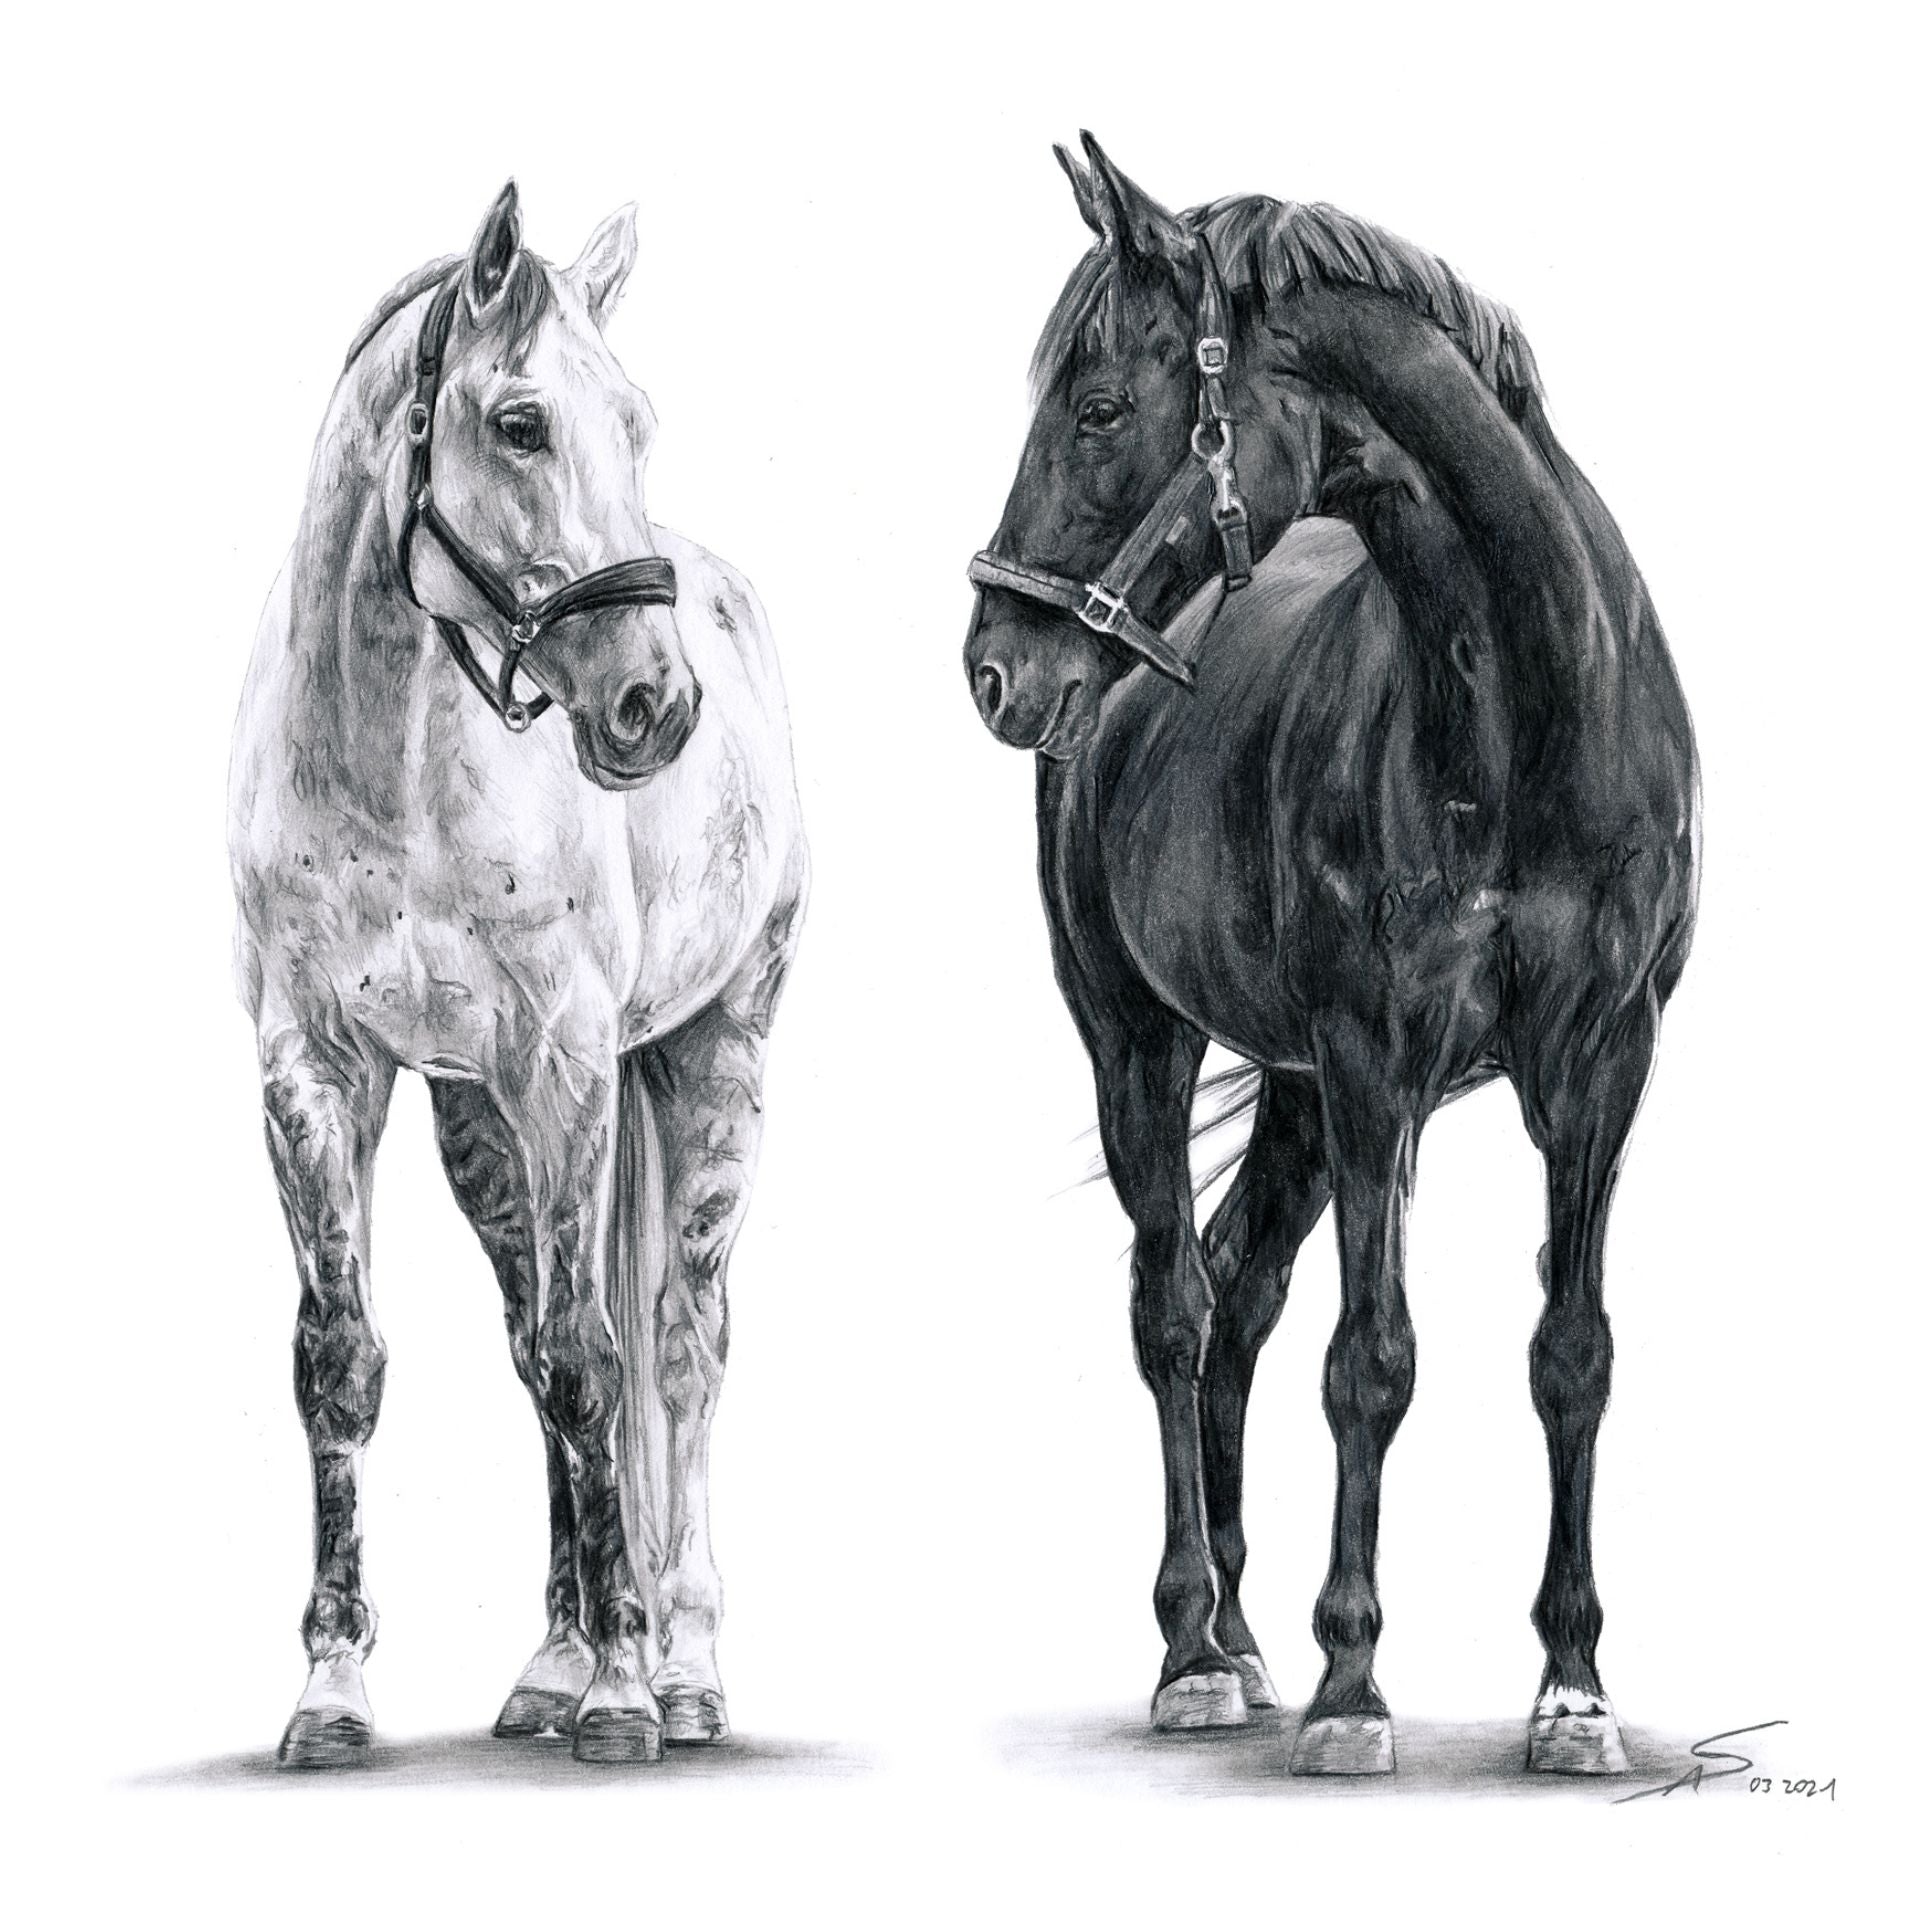 Bleistiftzeichnung von zwei Pferden, schwarz-weiß